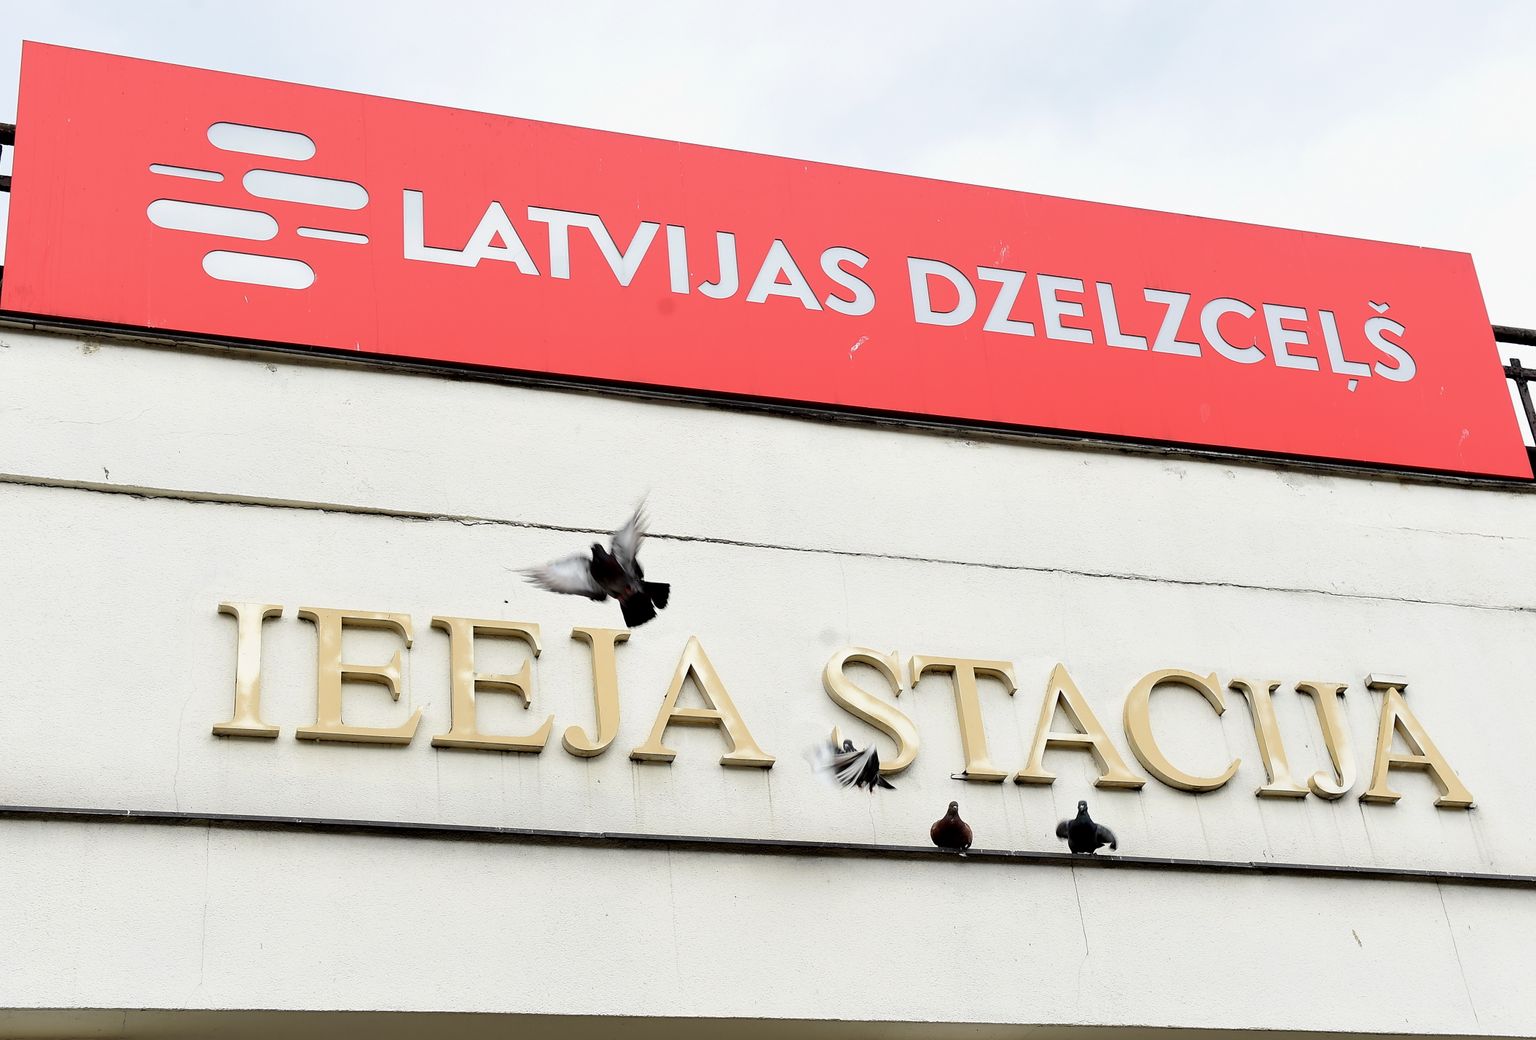 "Latvijas dzelzceļš" izkārtne pie ieejas stacijā.